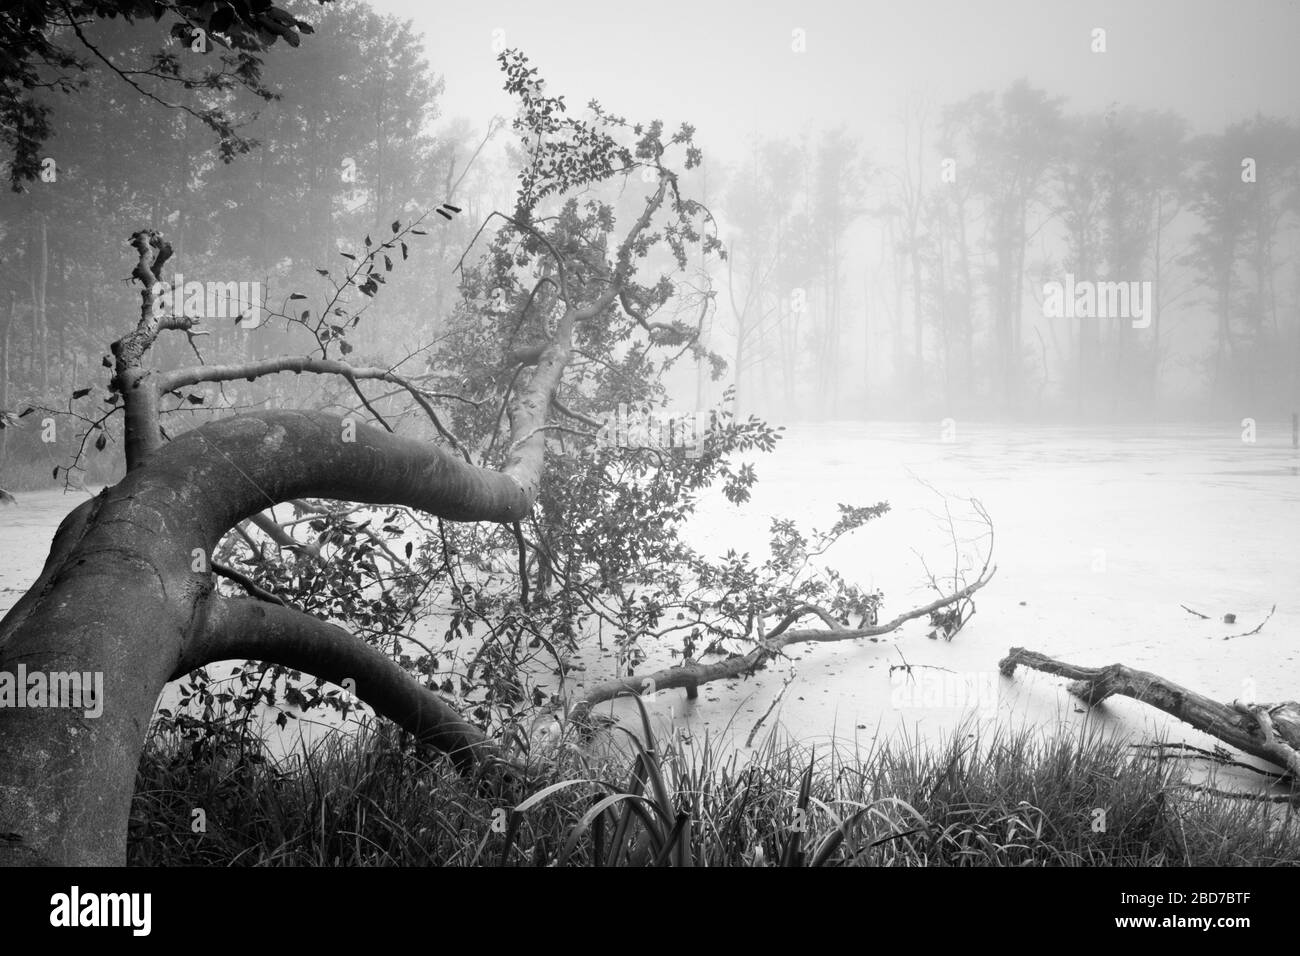 Lac marécageux dans le parc national de Jasmund avec brouillard, nature intacte, tronc d'arbre s'enfilant dans l'eau, île de Ruegen, Mecklembourg-Ouest Banque D'Images